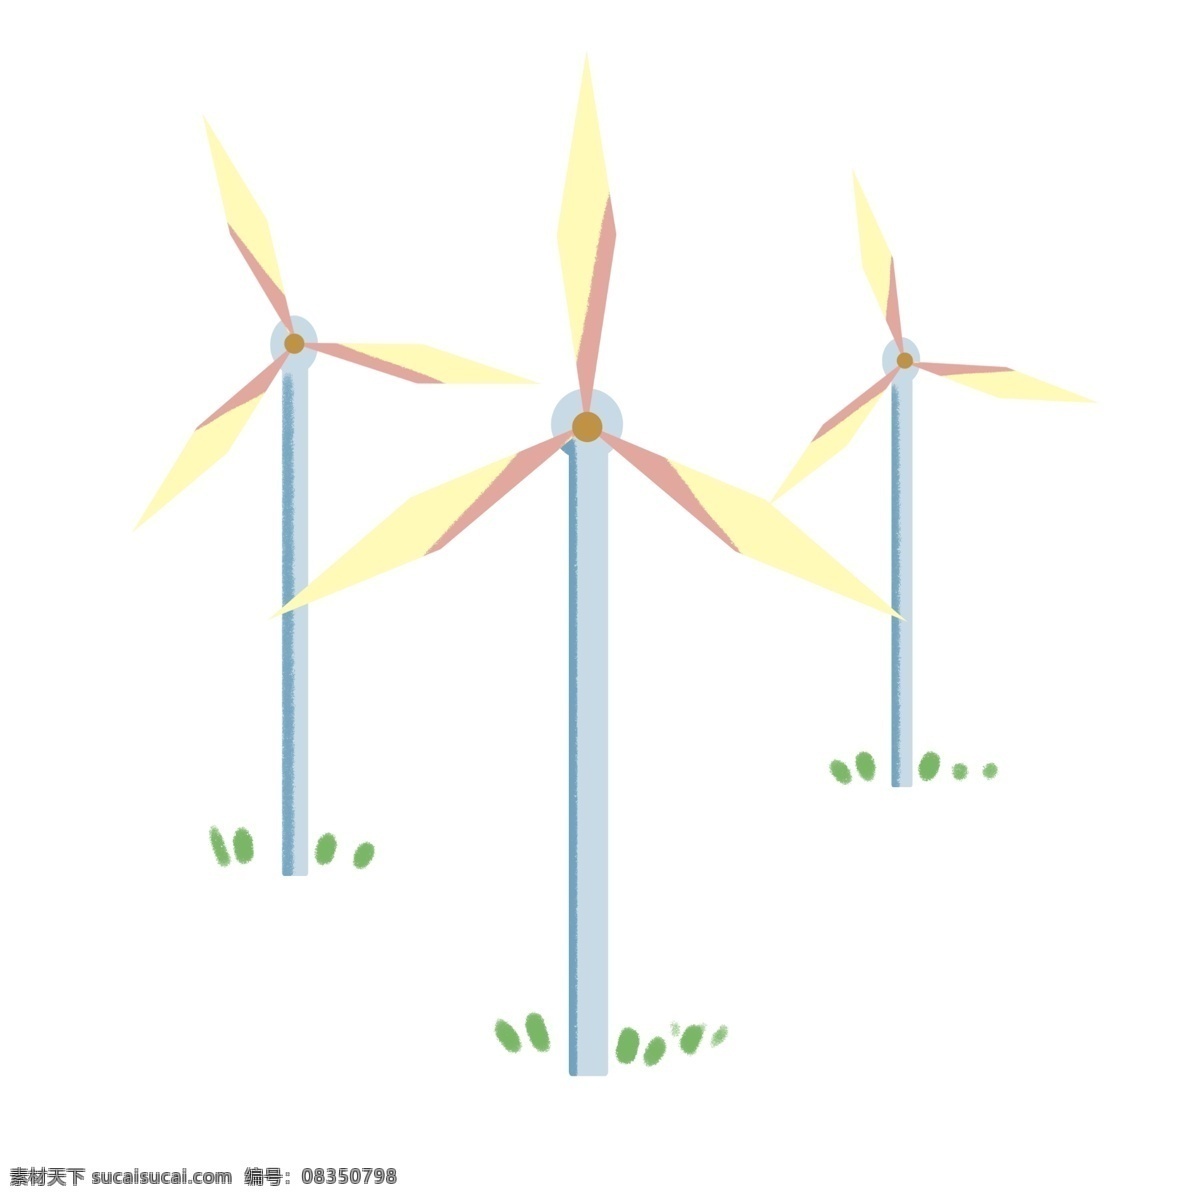 环境 绿色 能源 风车 电力能源风车 风力发电 环境绿色能源 风电 环境保护 风电场 草原 深秋 风力